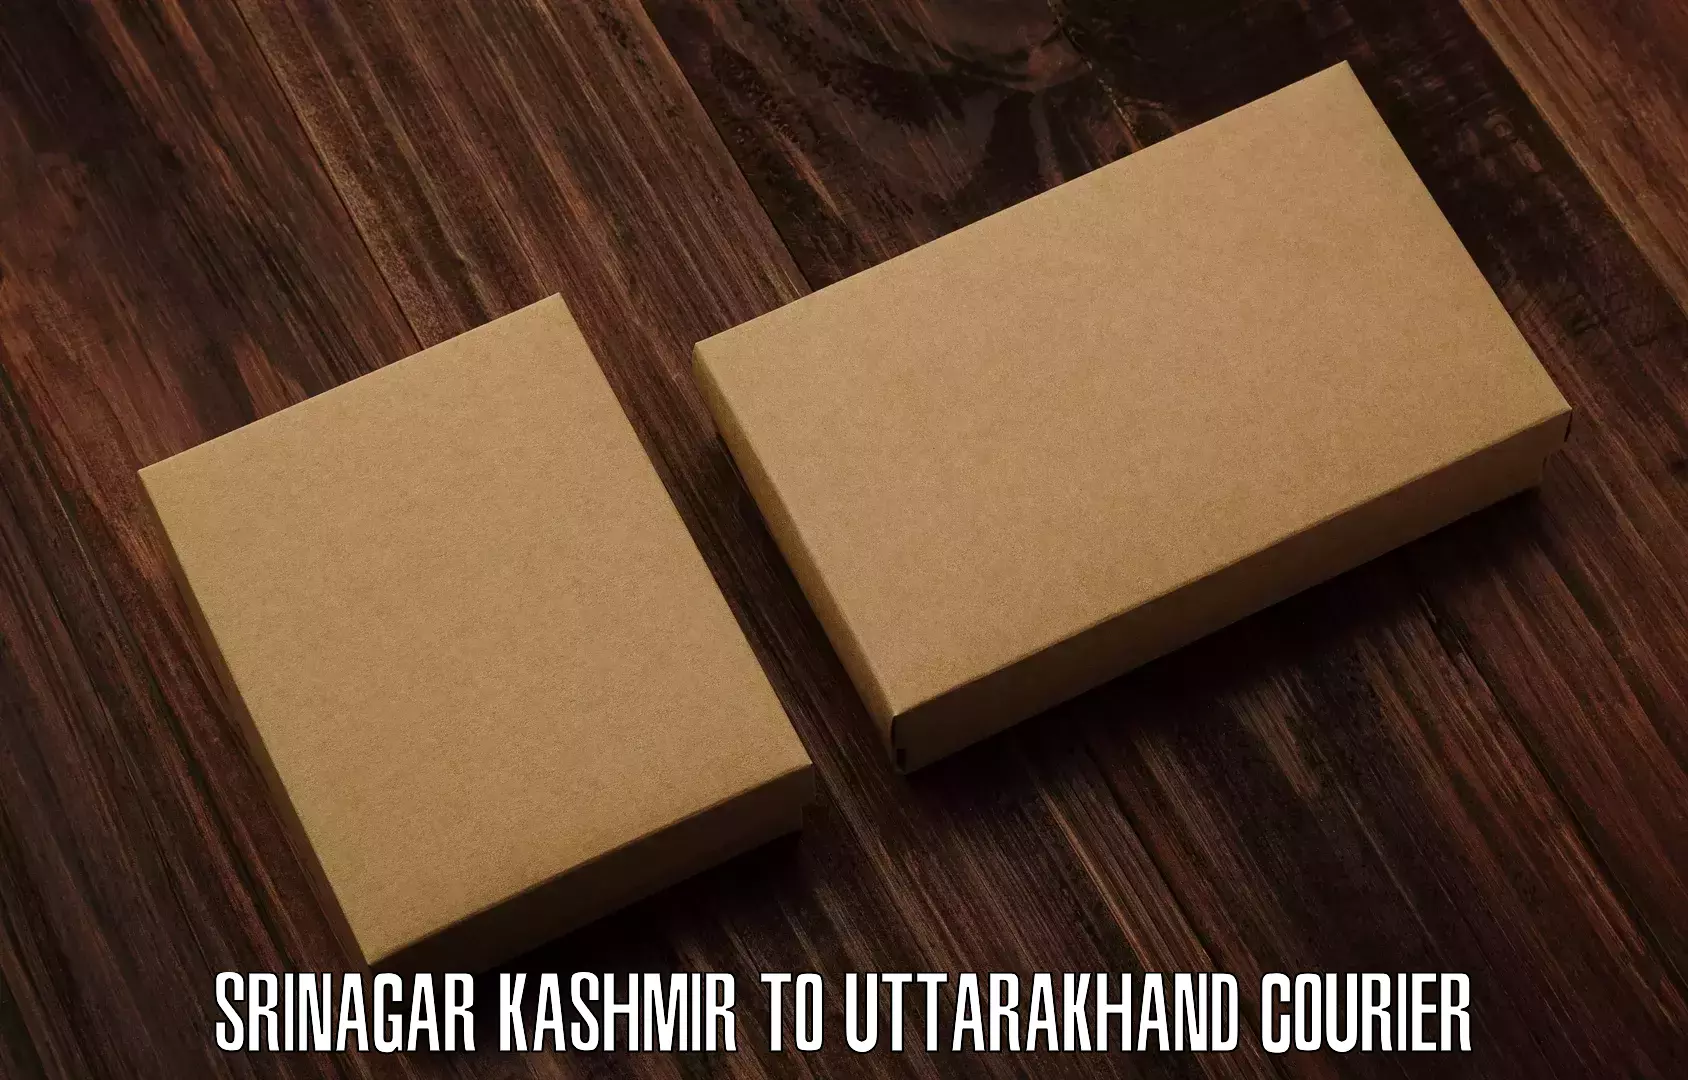 Cargo delivery service Srinagar Kashmir to IIT Roorkee